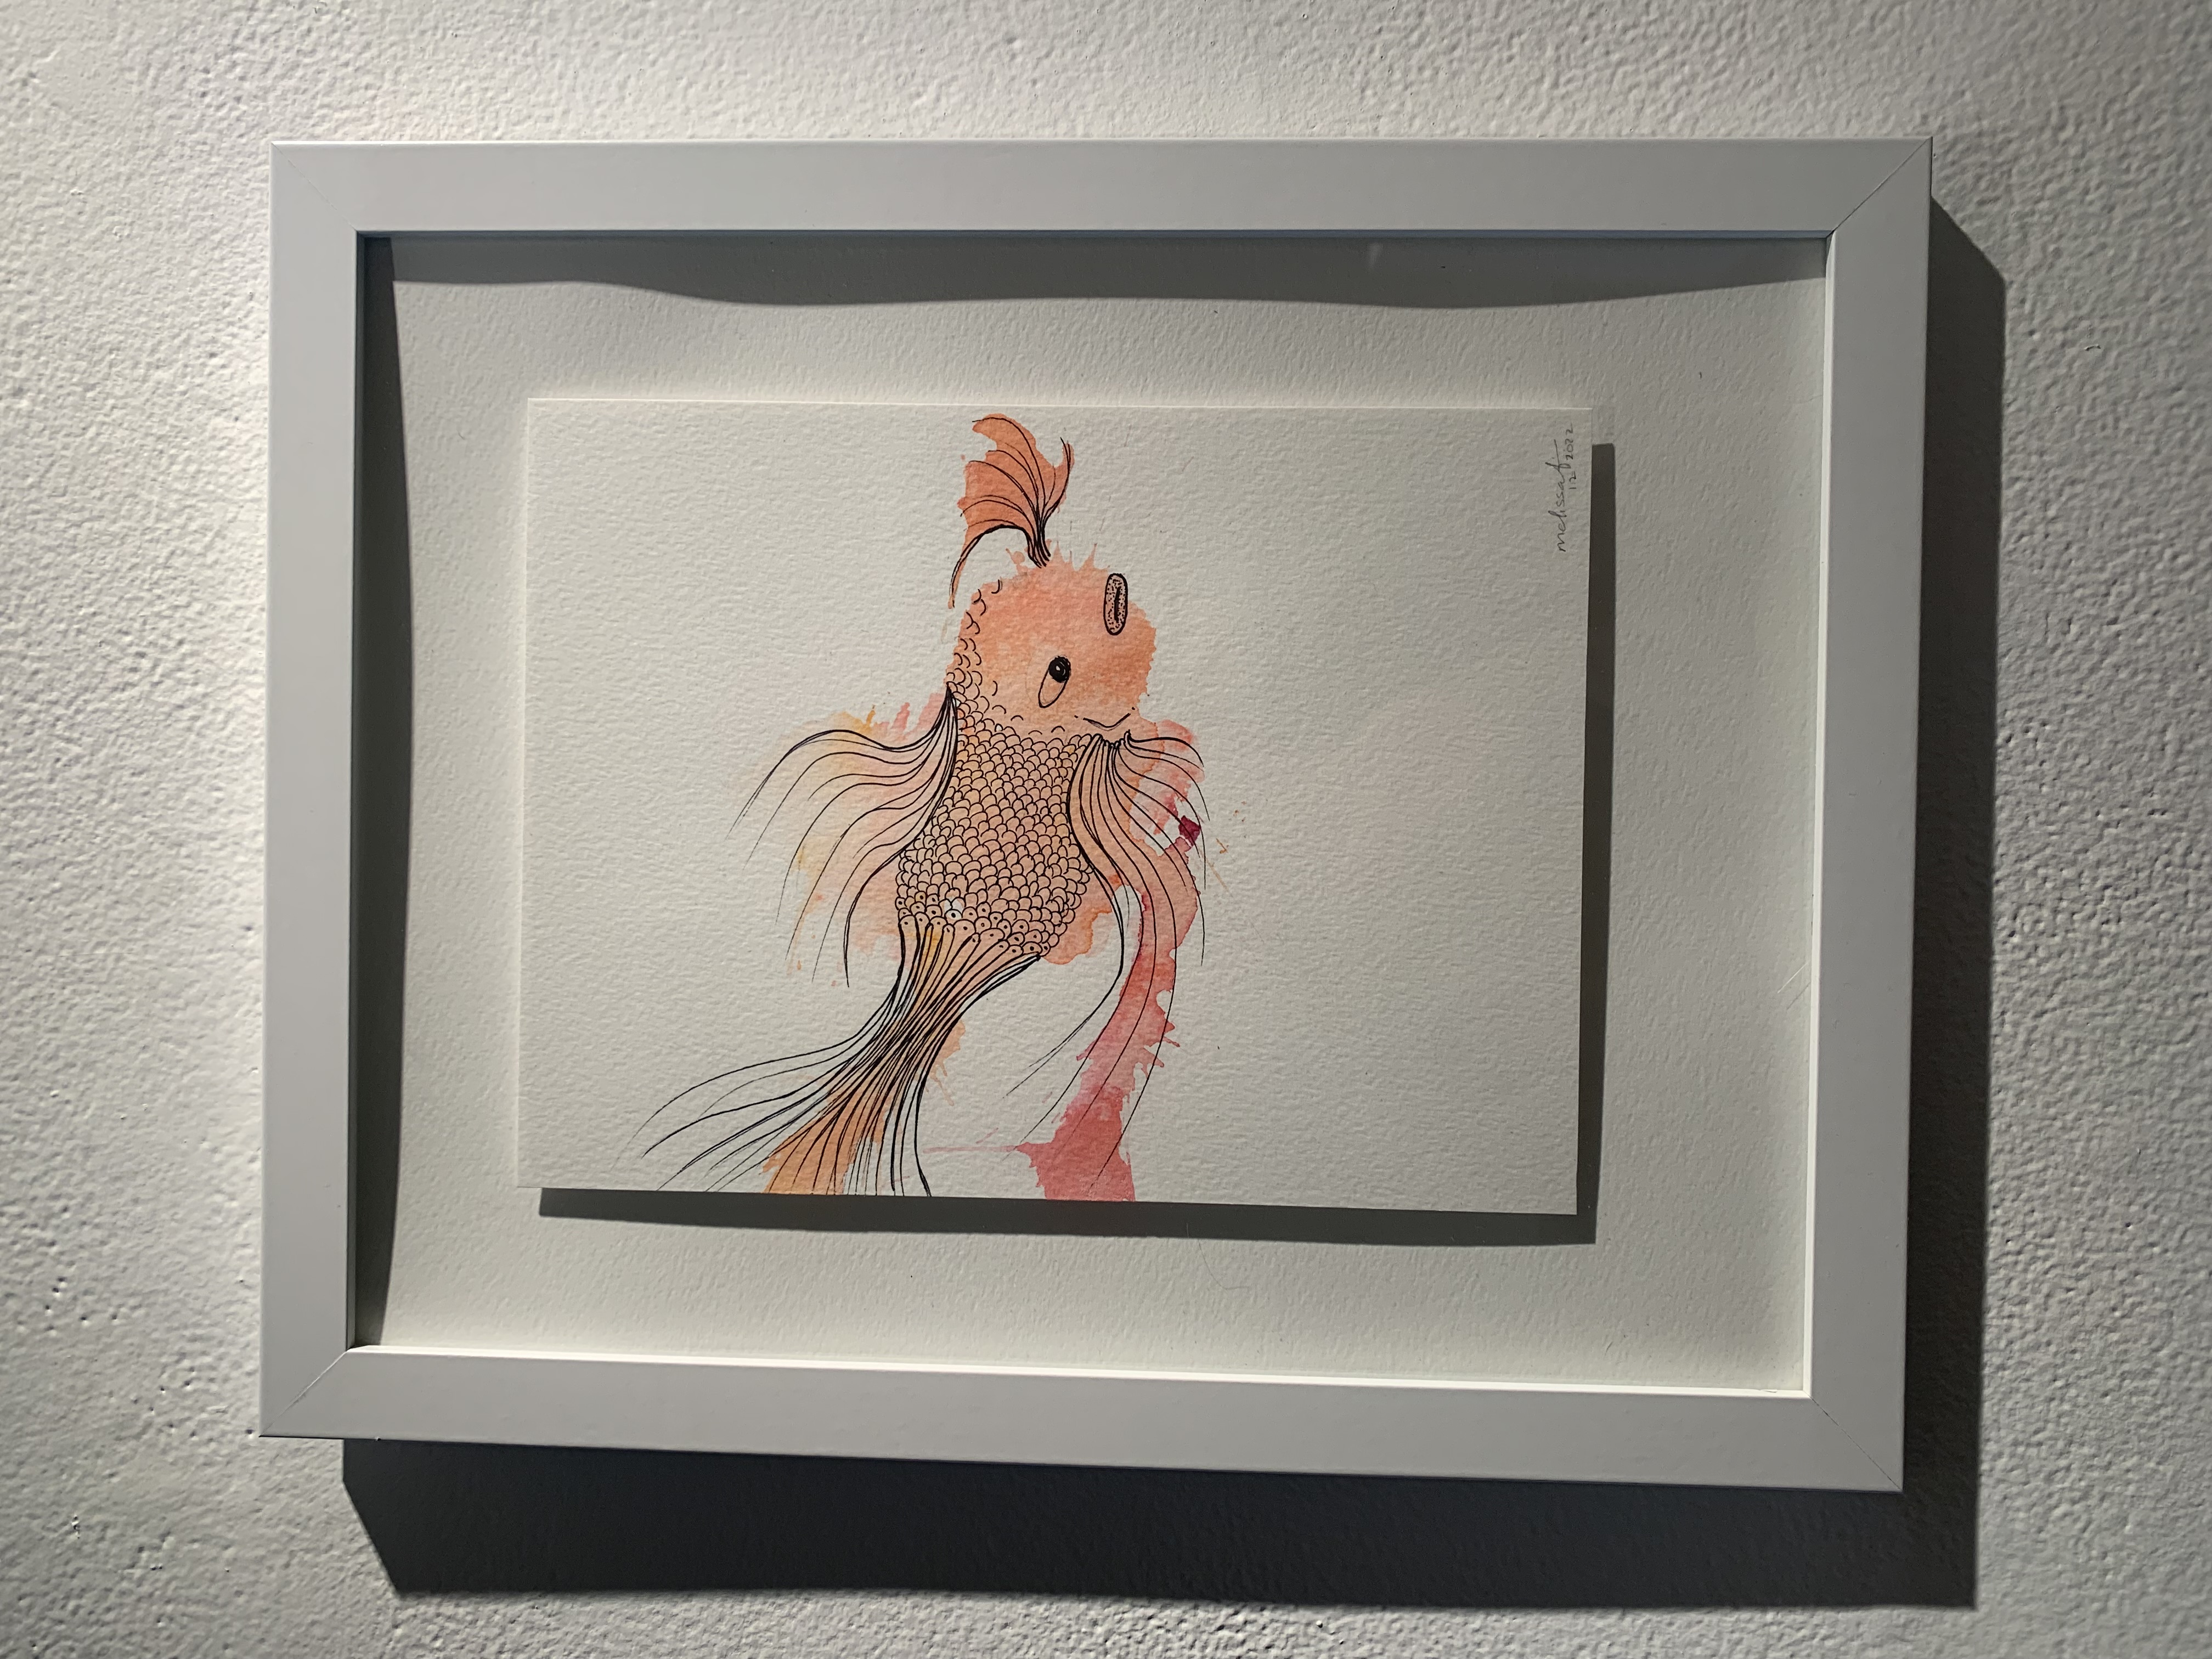 001: Image description, artwork of a pink and orange goldfish